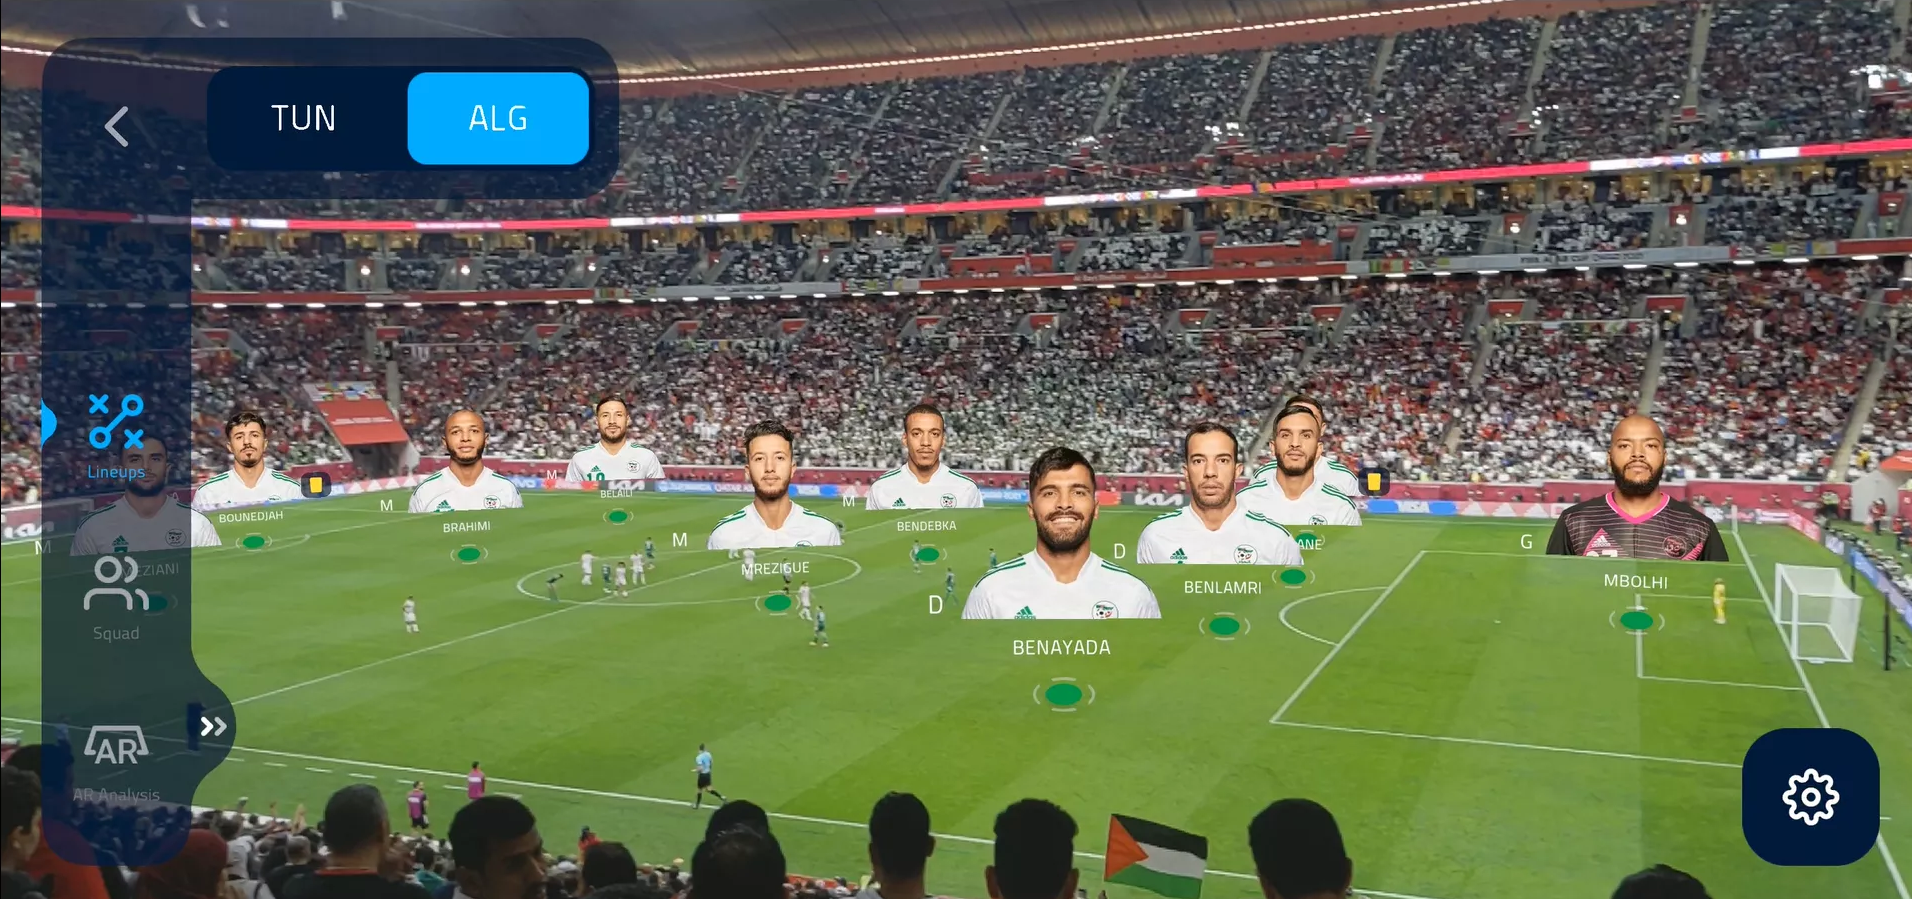 World Cup 2022: CĐV trên sân có thể ‘check’ VAR như trọng tài, xem được cả thông số cầu thủ theo thời gian thực